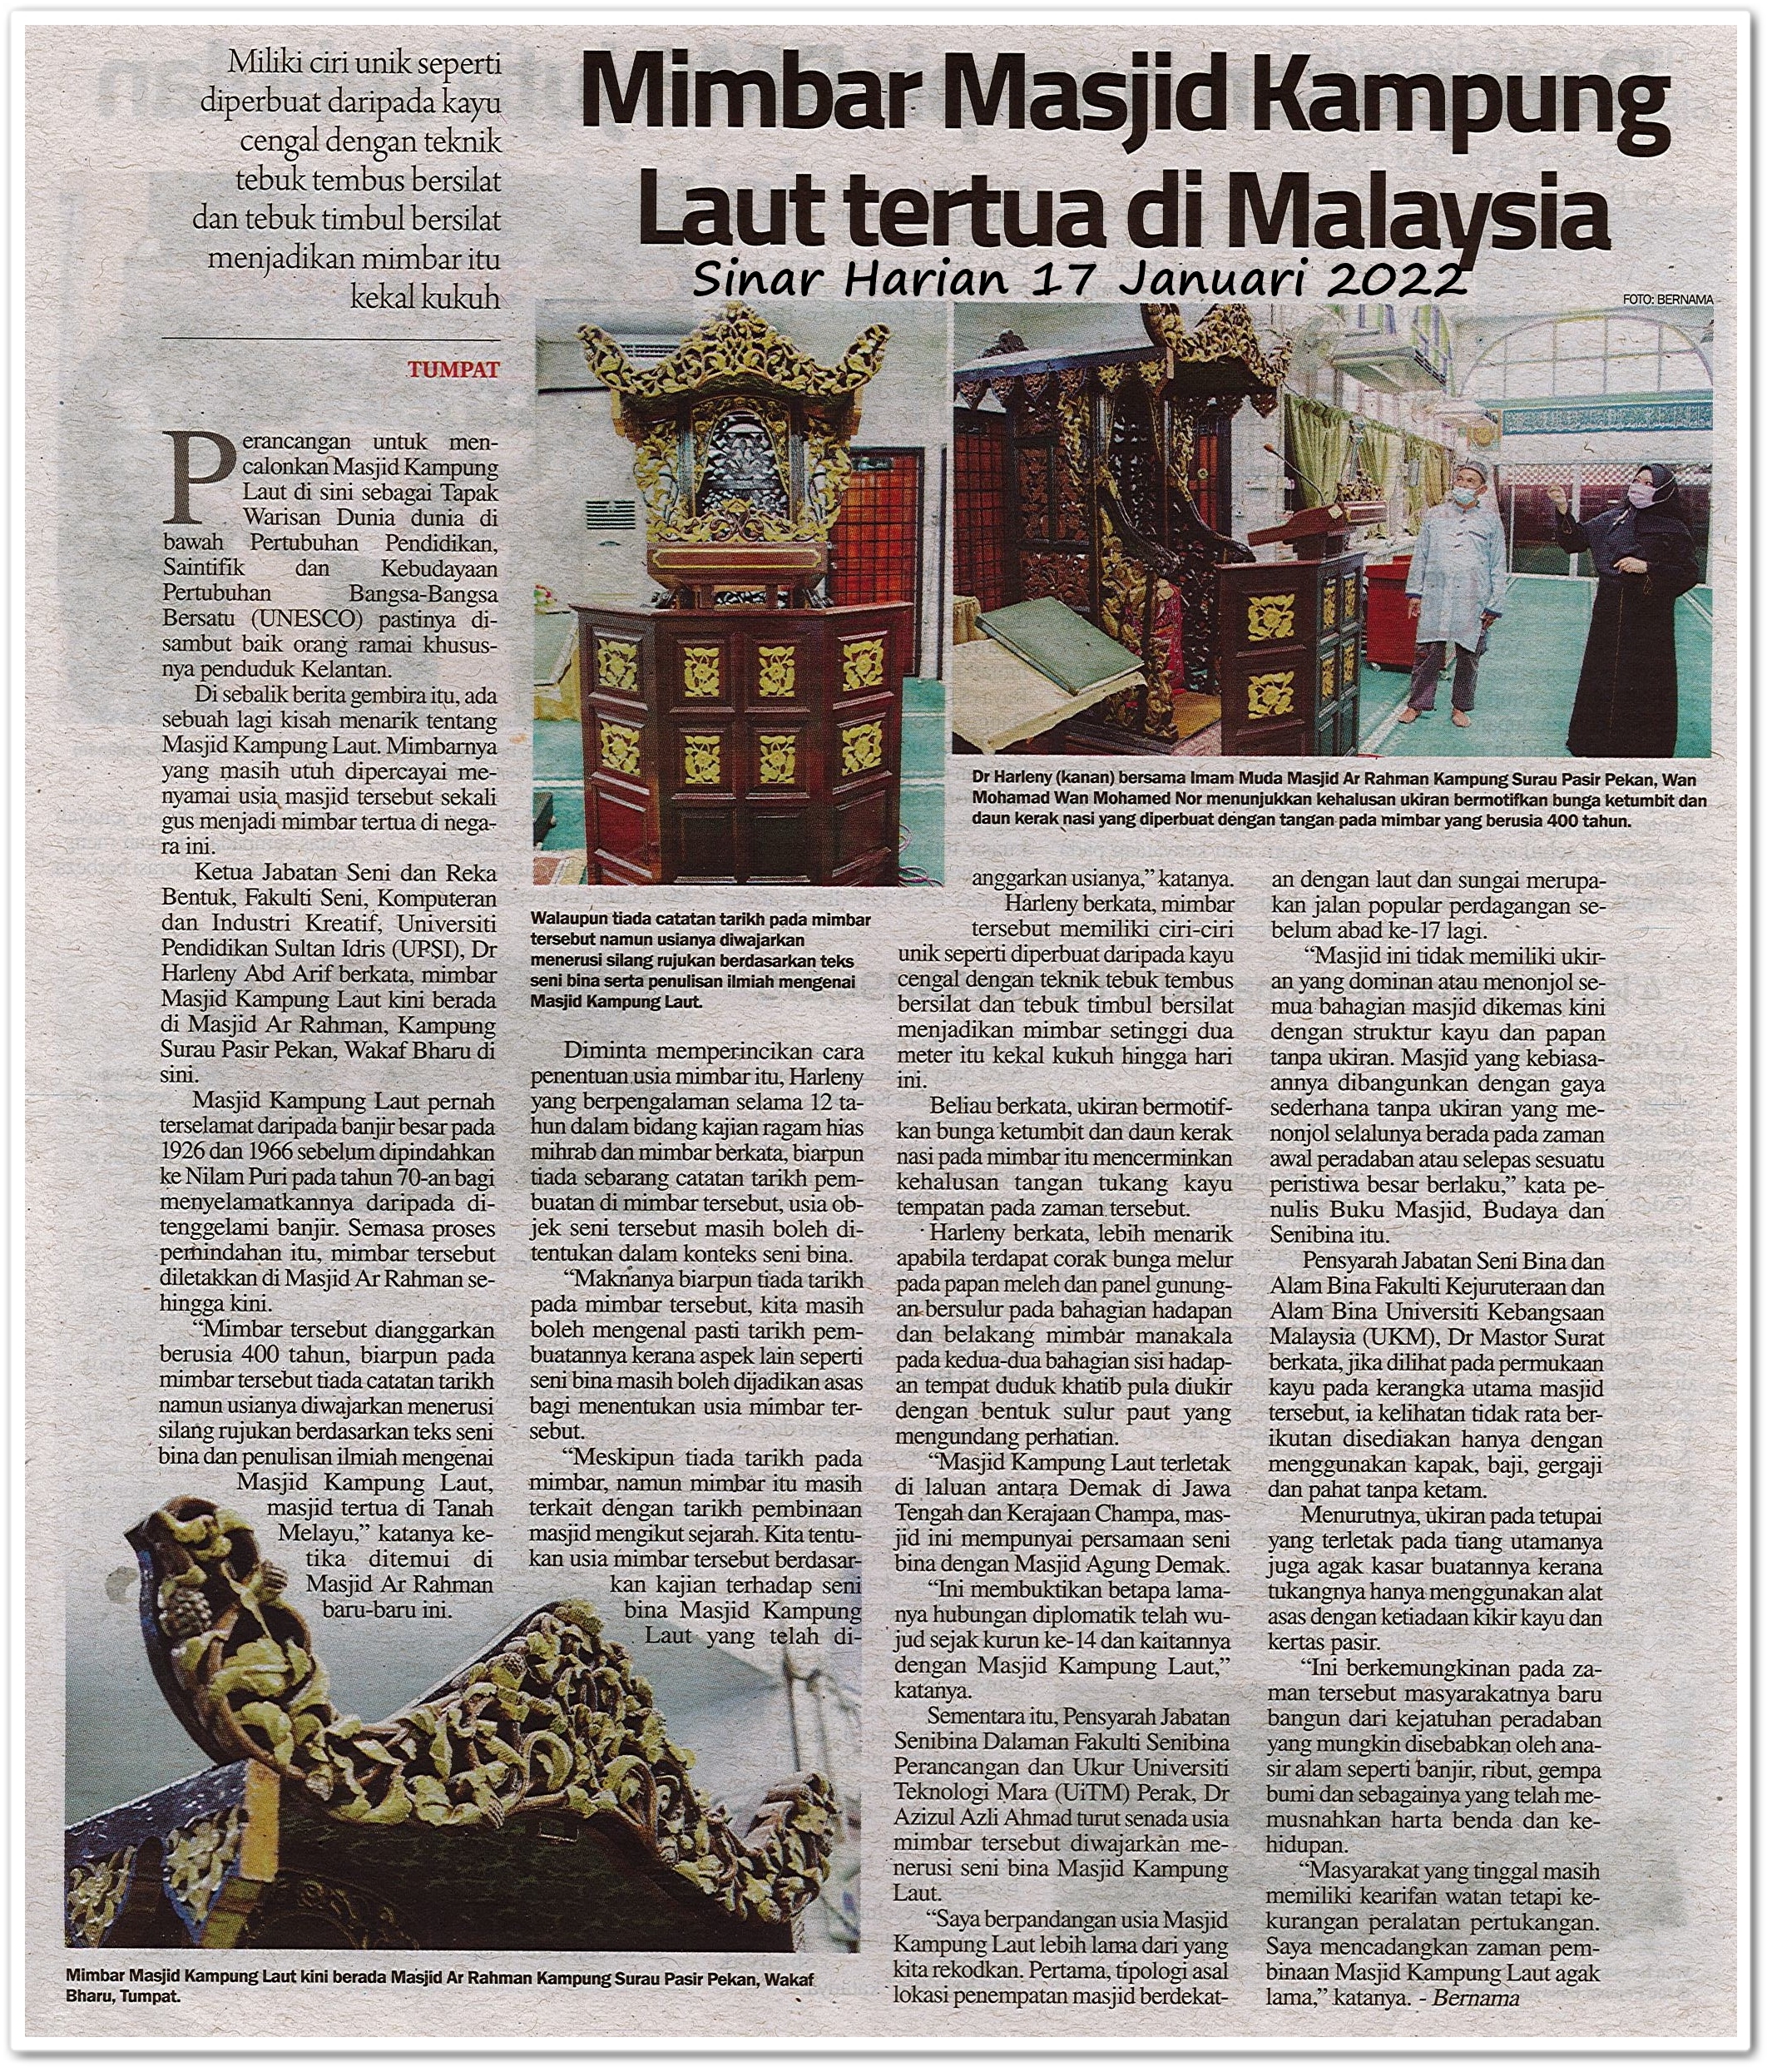 Mimbar Masjid Kampung Laut tertua di Malaysia - Keratan akhbar Sinar Harian 17 Januari 2022